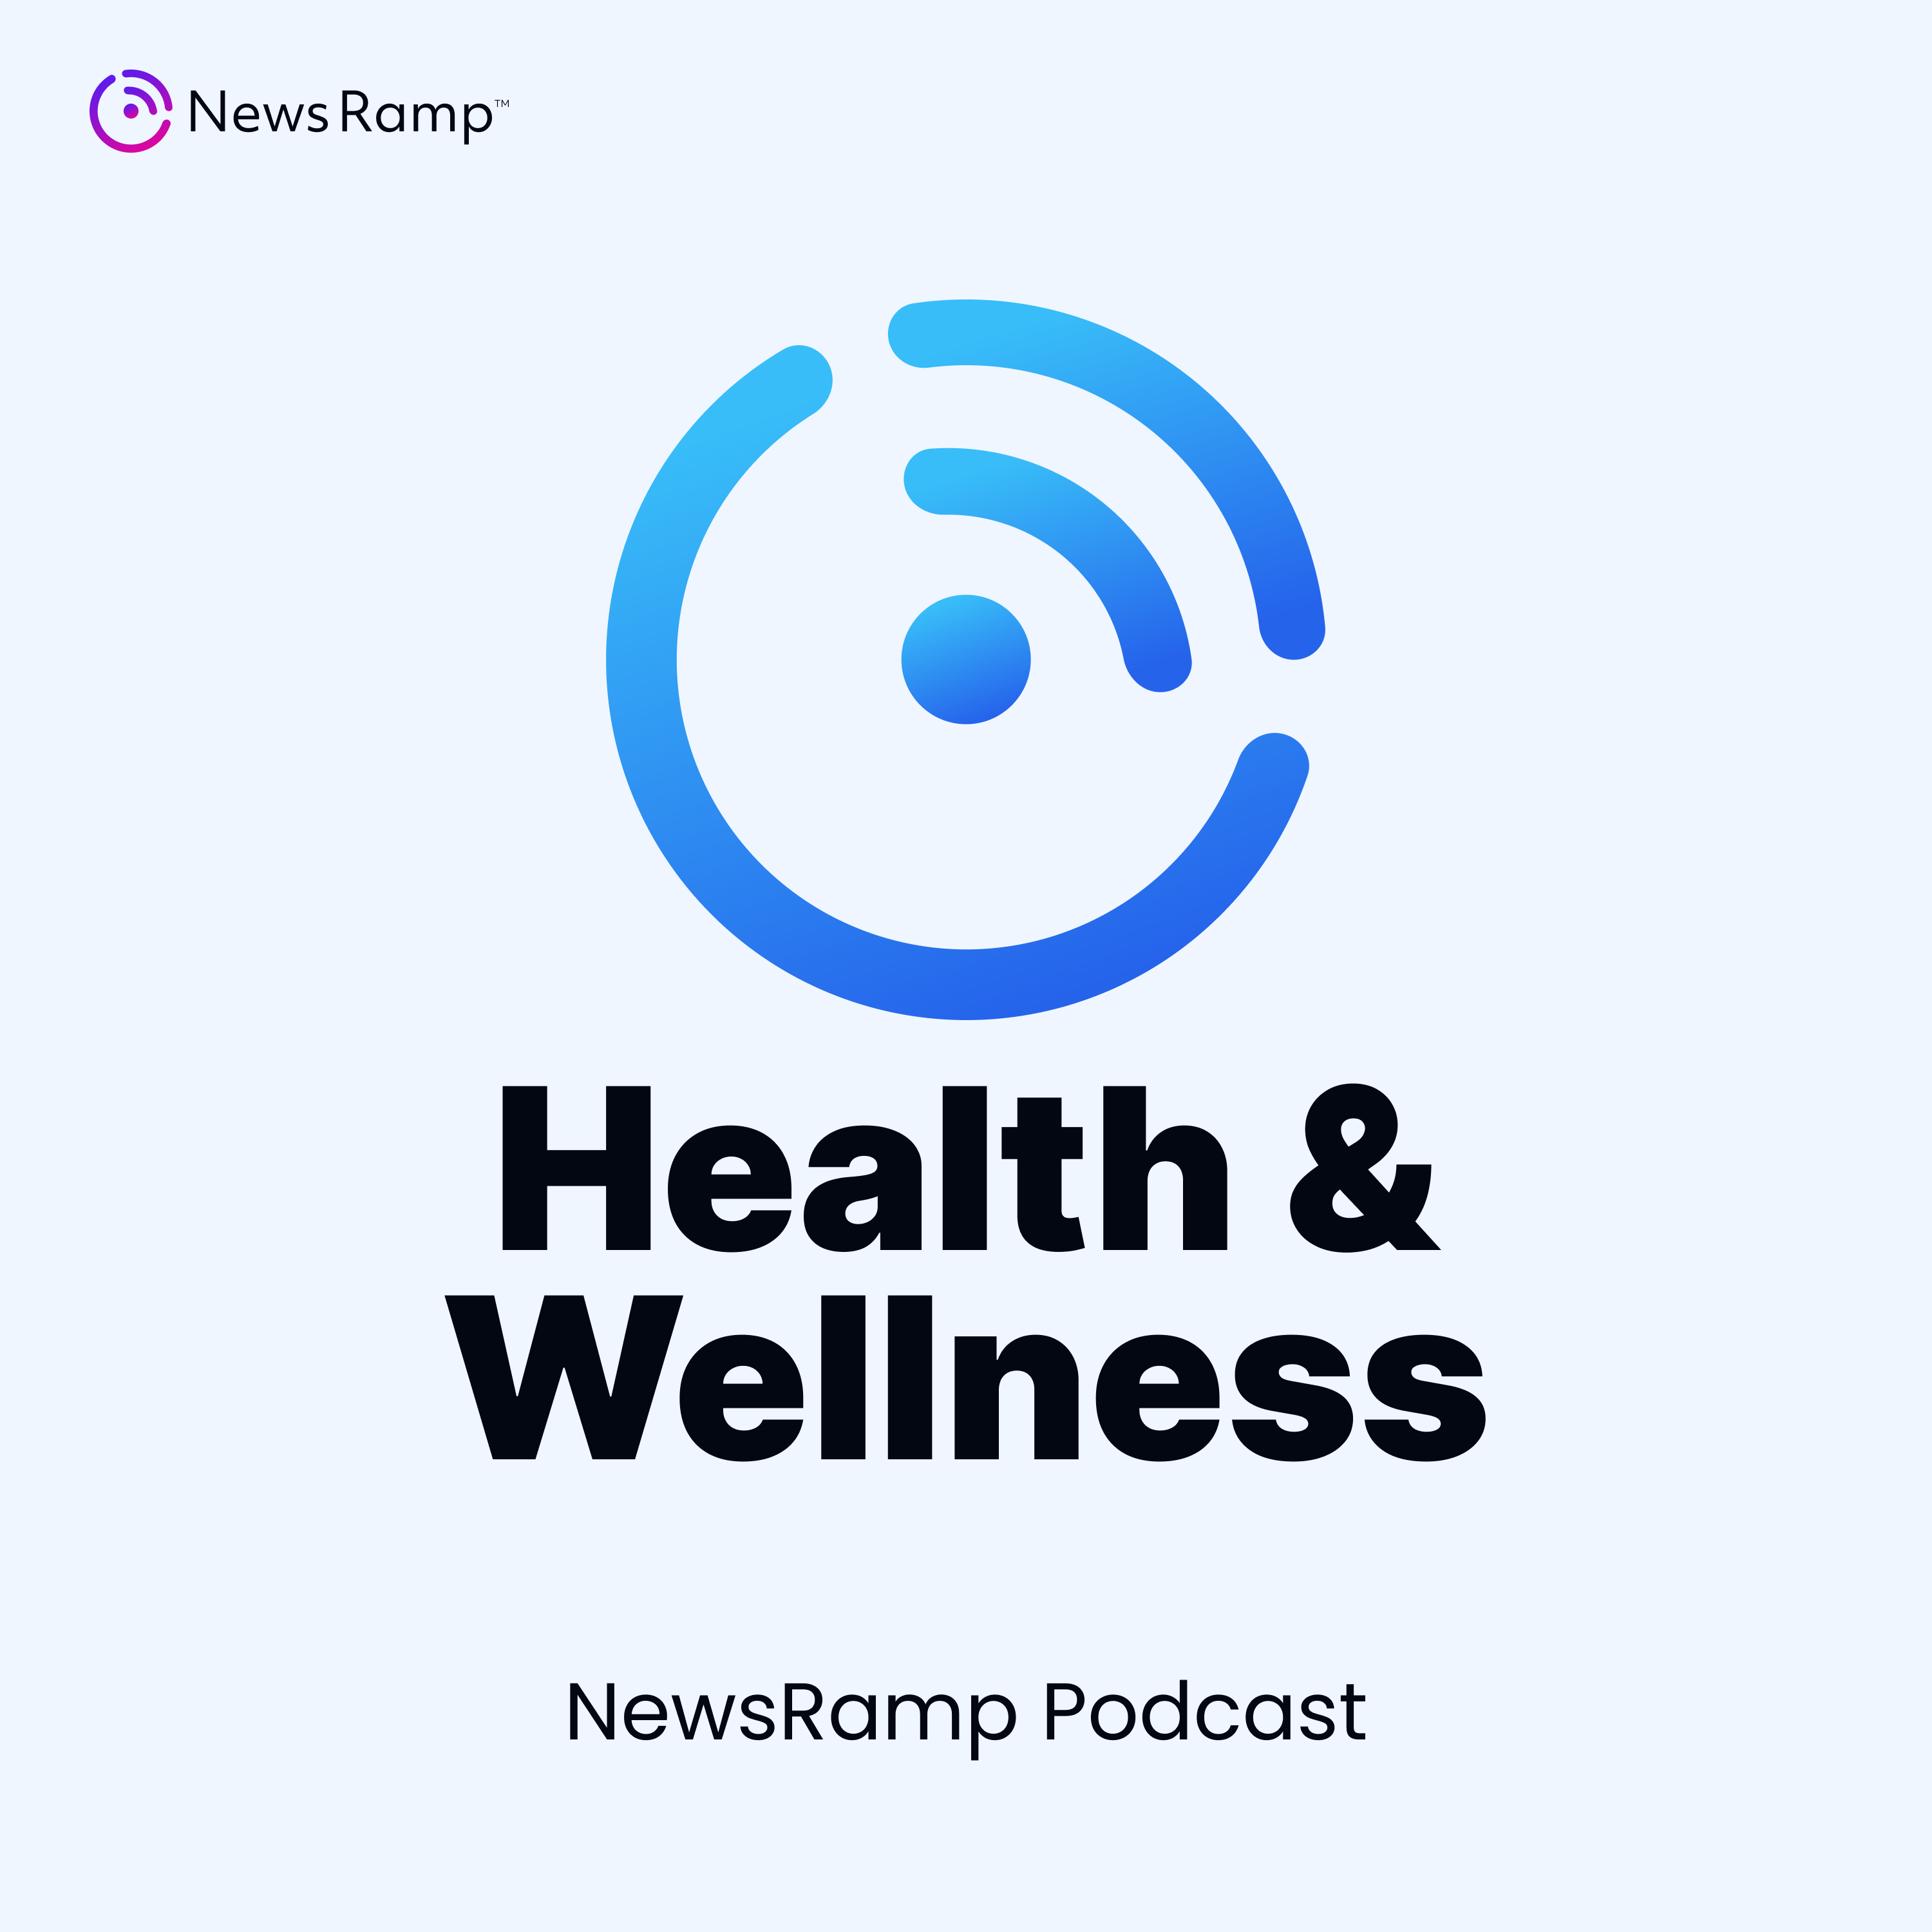 NewsRamp Health & Wellness Podcast